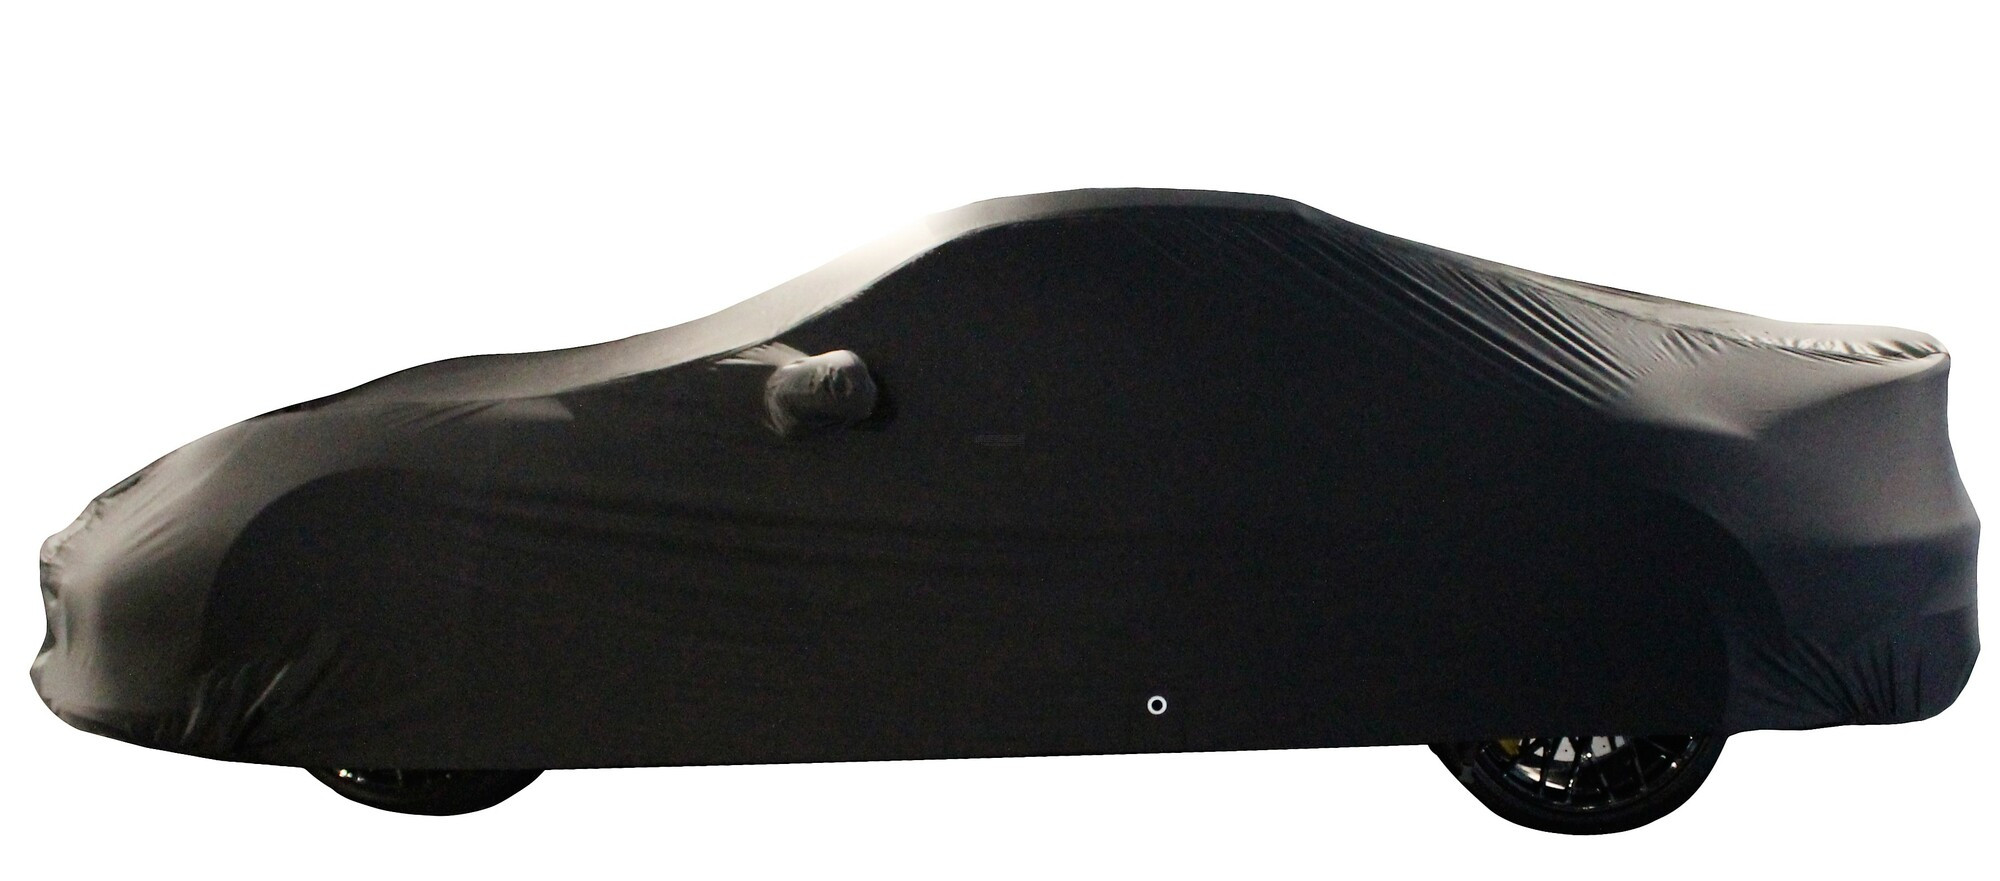 Car-Cover Satin Black mit Taschen für Spiegel und Spoiler für Porsche 911  Turbo G-Model